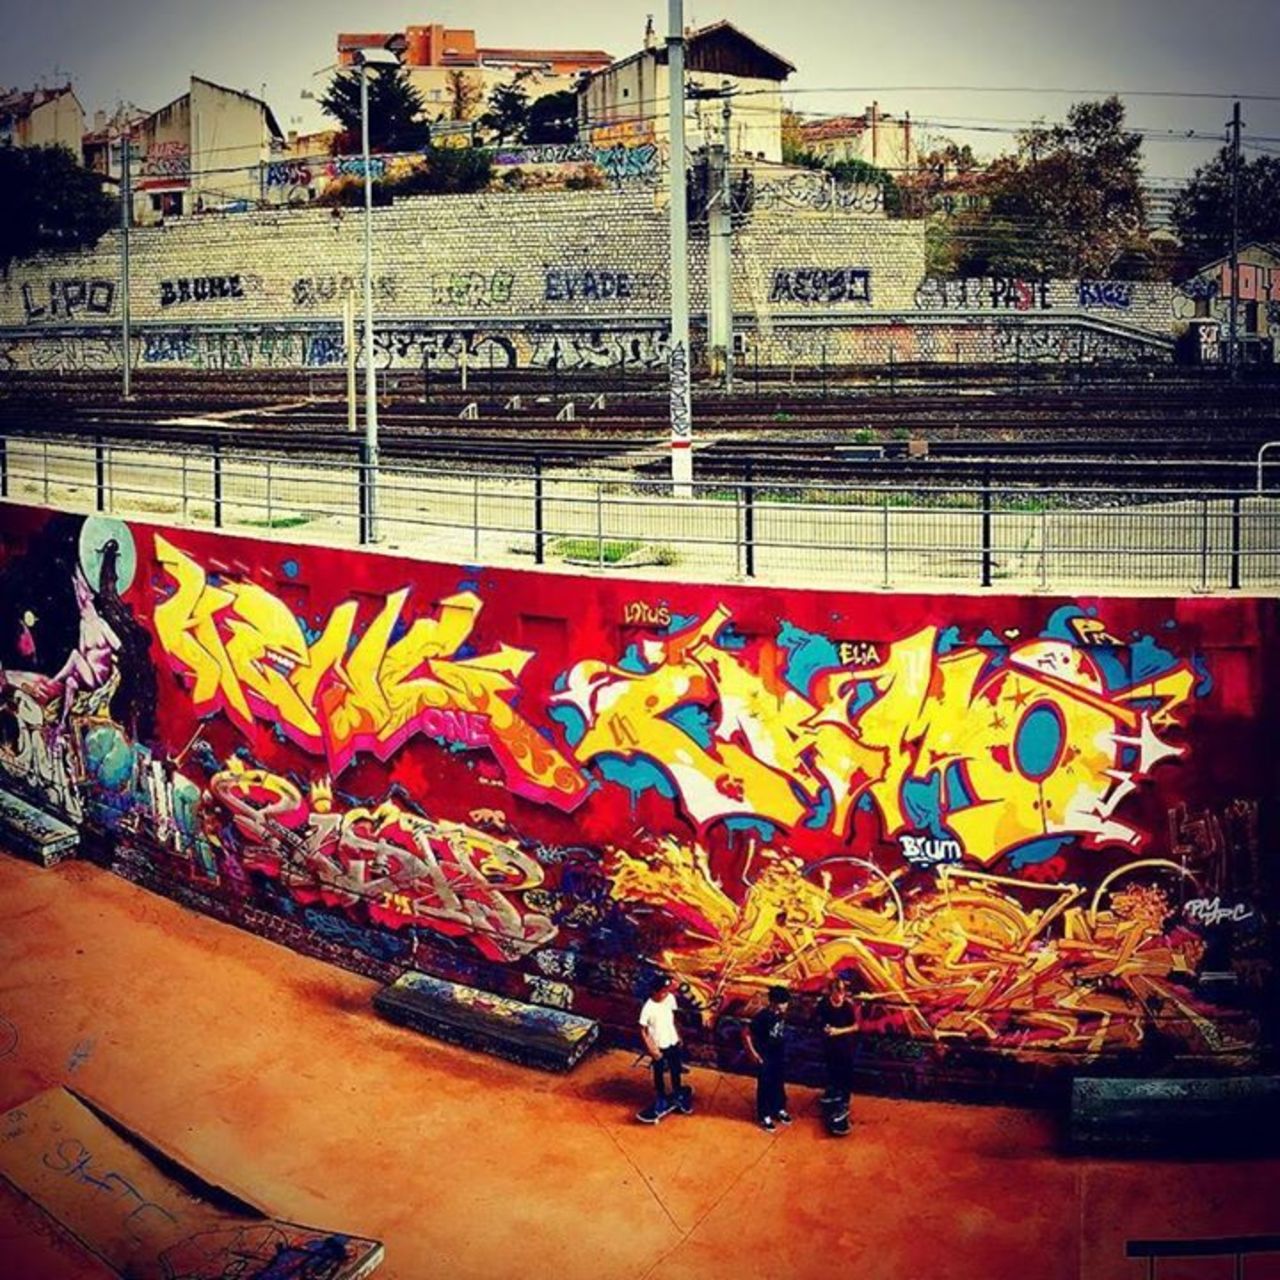 #Marseille #marseille #lafrichebelledemai #streetart #nice #skatepark #graffiti #graffitia… http://ift.tt/1i6nMHf https://t.co/3BRRKeC00J